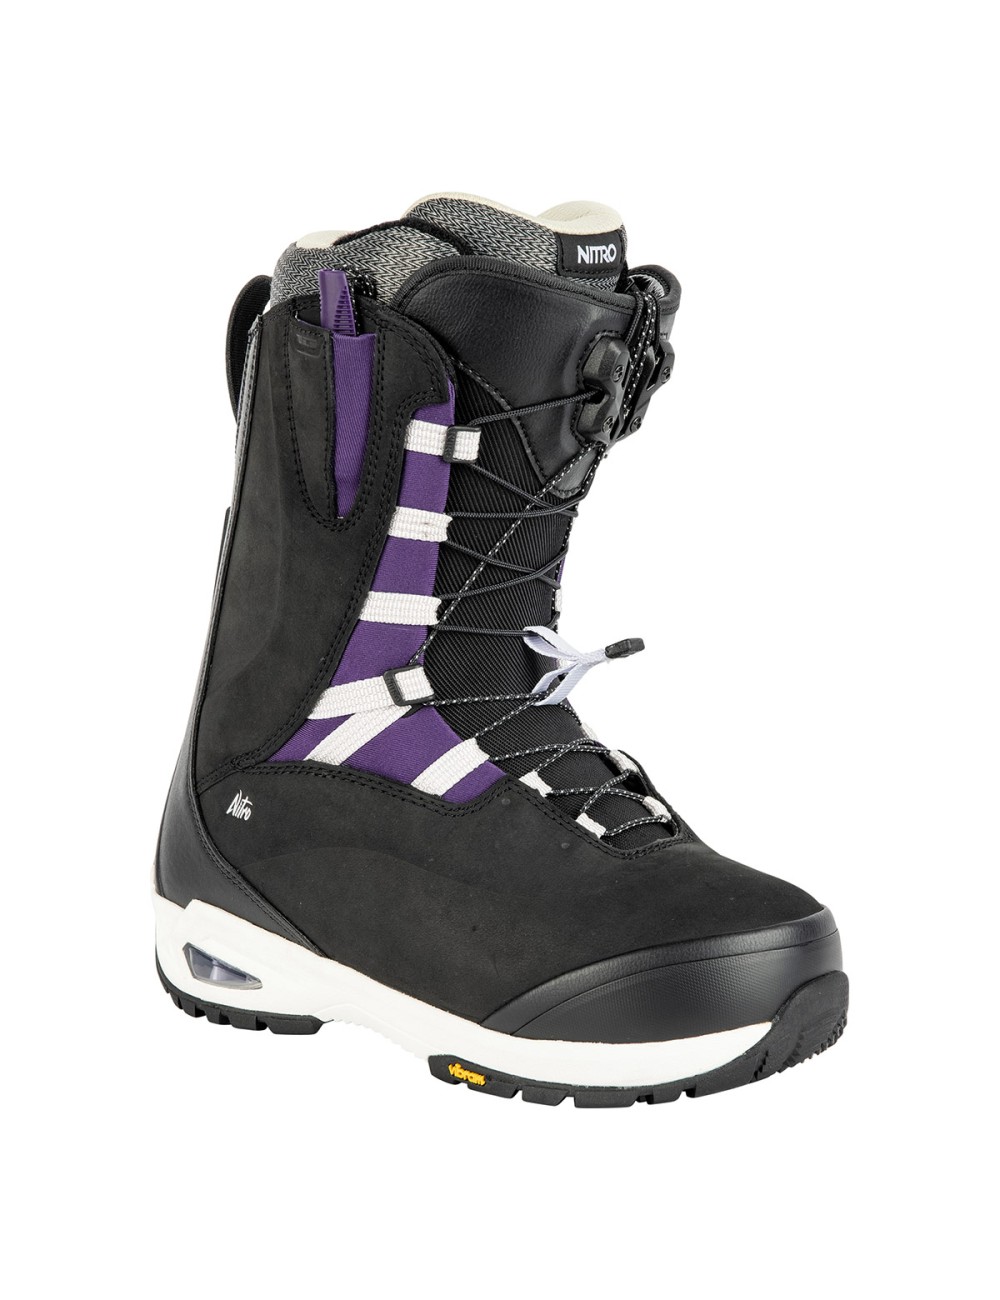 Nitro Wms Bianca TLS Boot - Black/Purple_14372